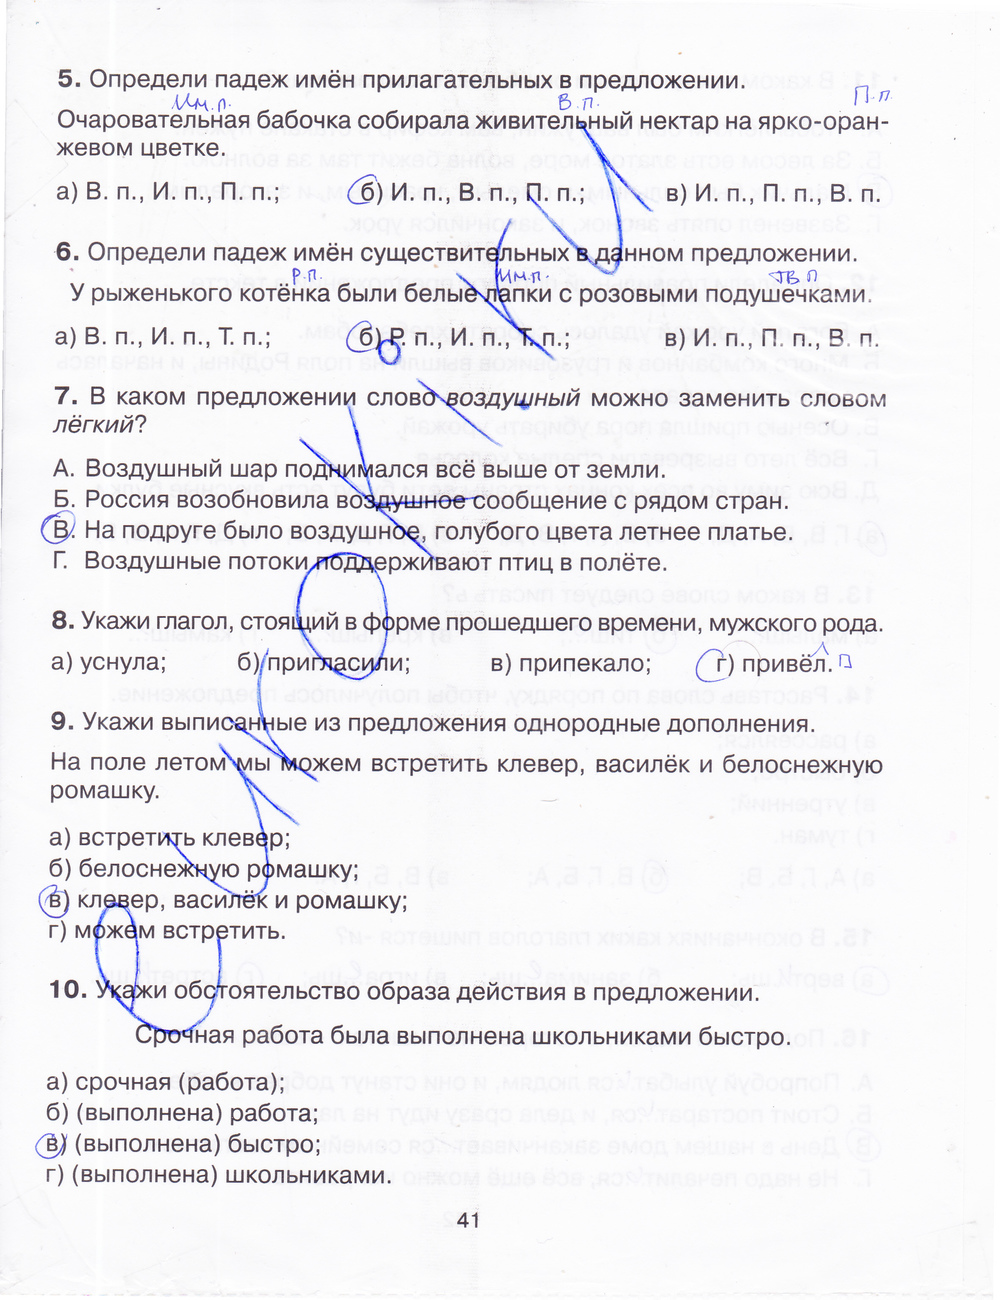 Тренажер русский язык 4 класс шклярова ответы. Русский язык тренажер 4 класс ответы. Тренажёр по русскому языку 4 класс ответы.